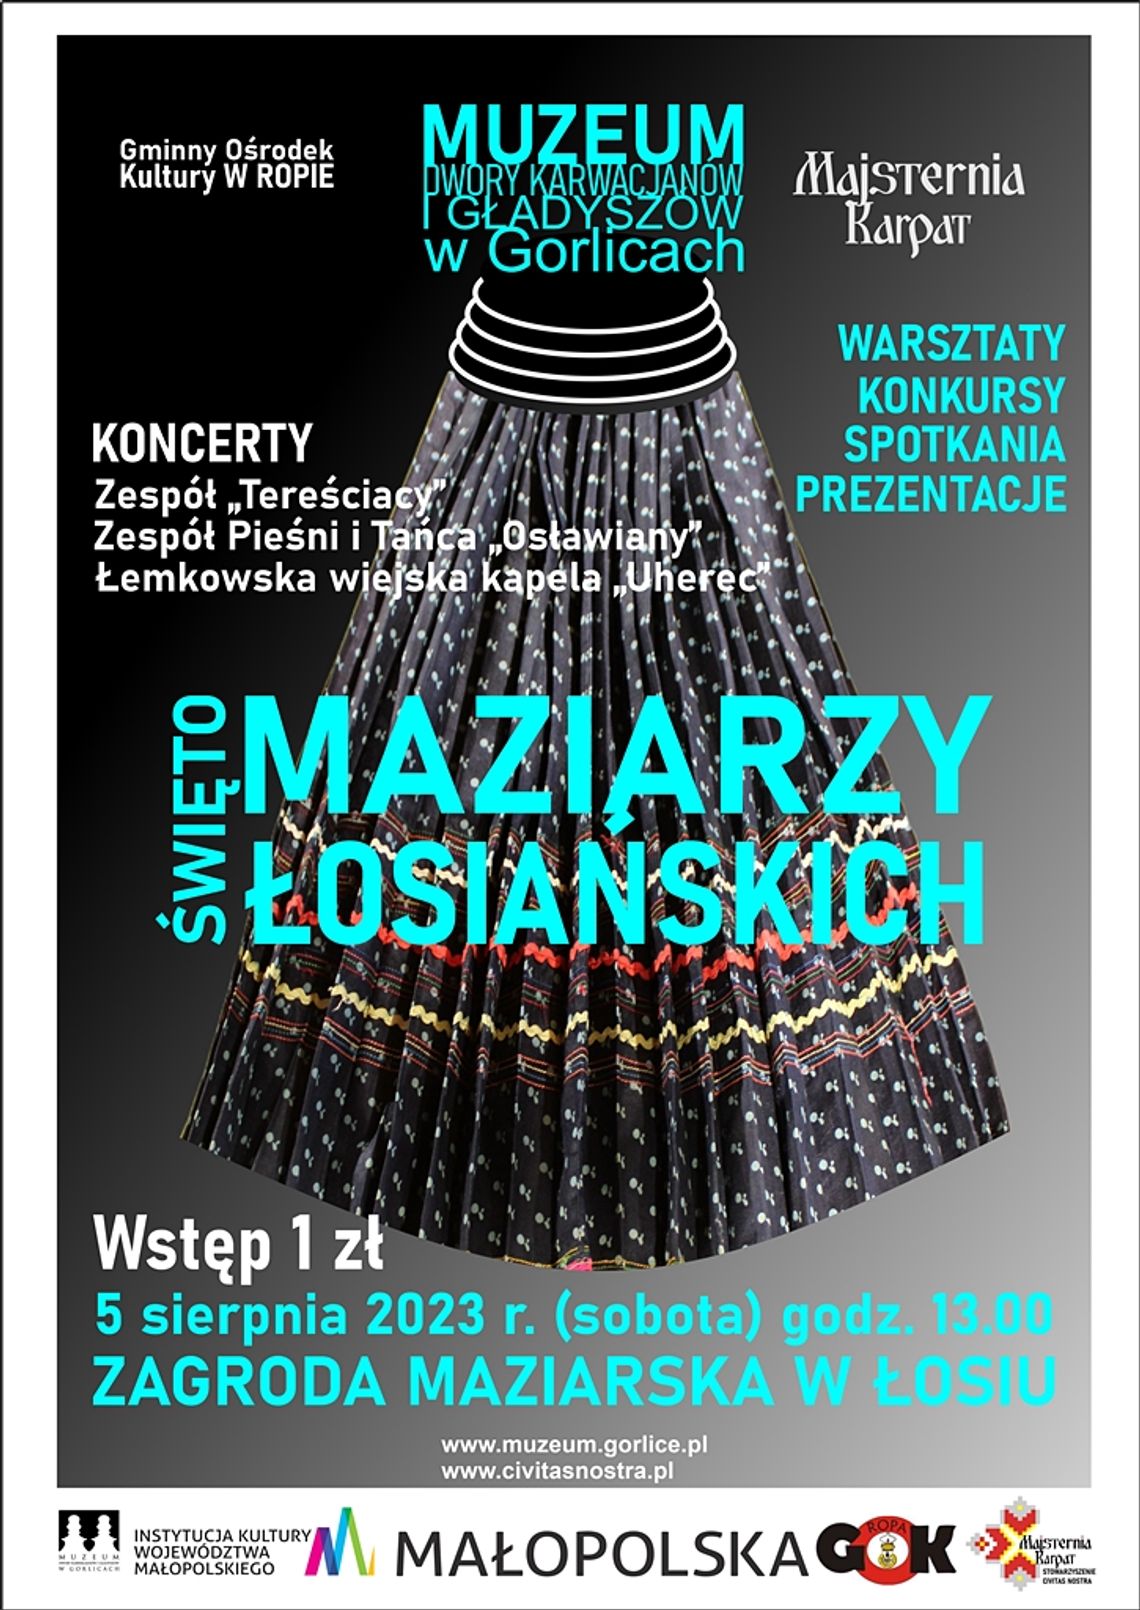 ŚWIĘTO MAZIARZY ŁOSIAŃSKICH 2023 – Zagroda Maziarska w Łosiu | halogorlice.info